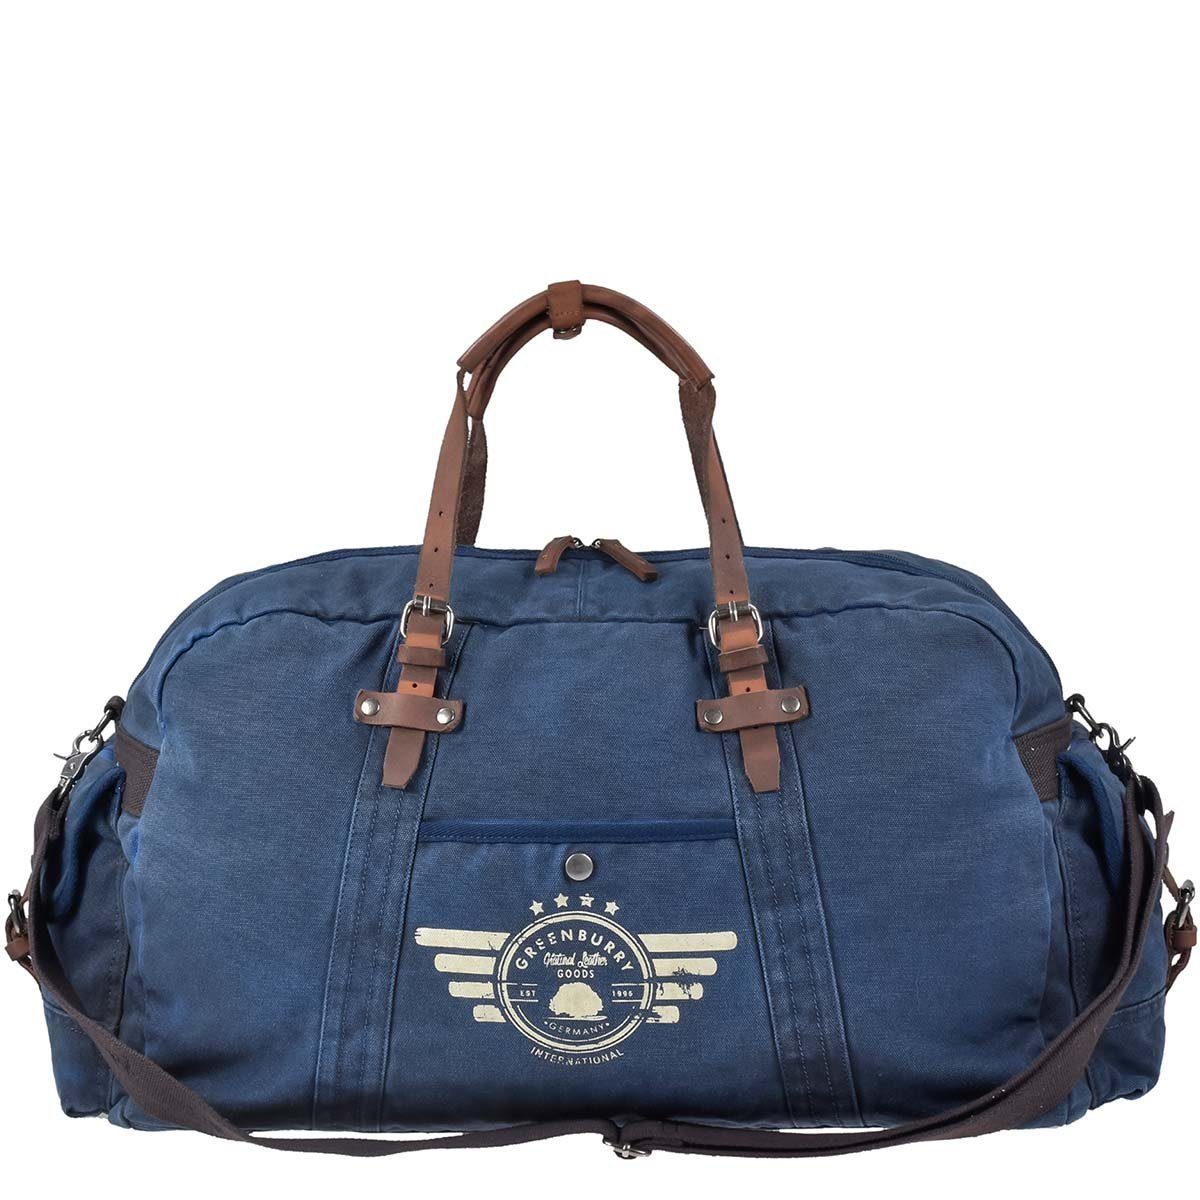 Greenburry Reisetasche Aviator Blue Edition, used Look Canvas mit Lederbesatz, Sporttasche 65cm, Weekender